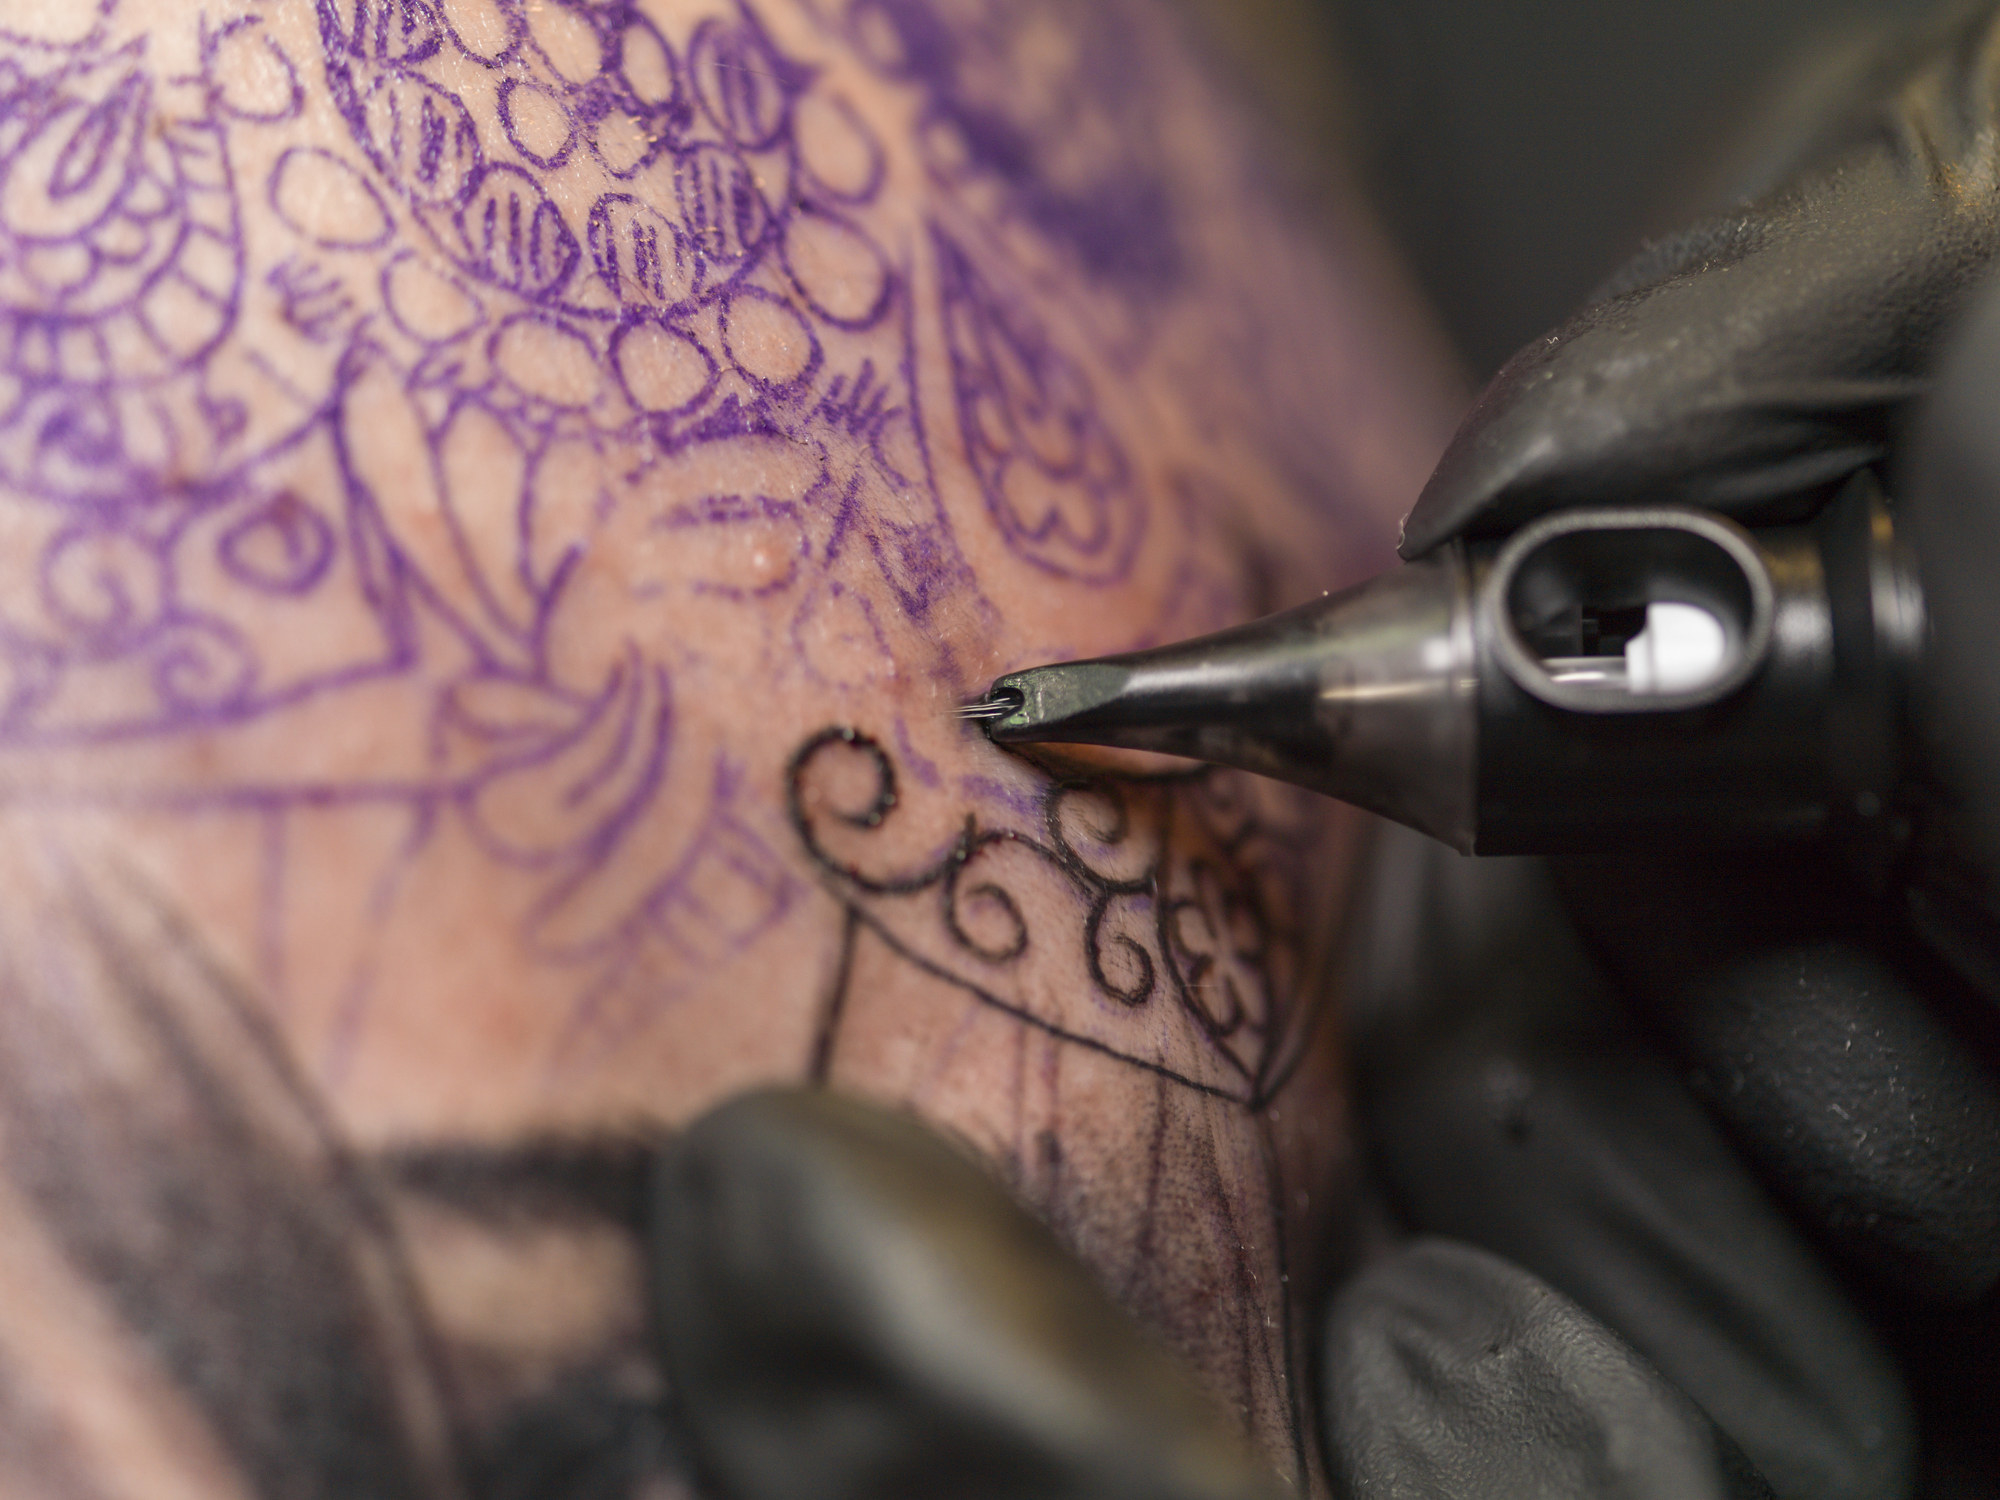 Closeup of a tattoo artist tattooing